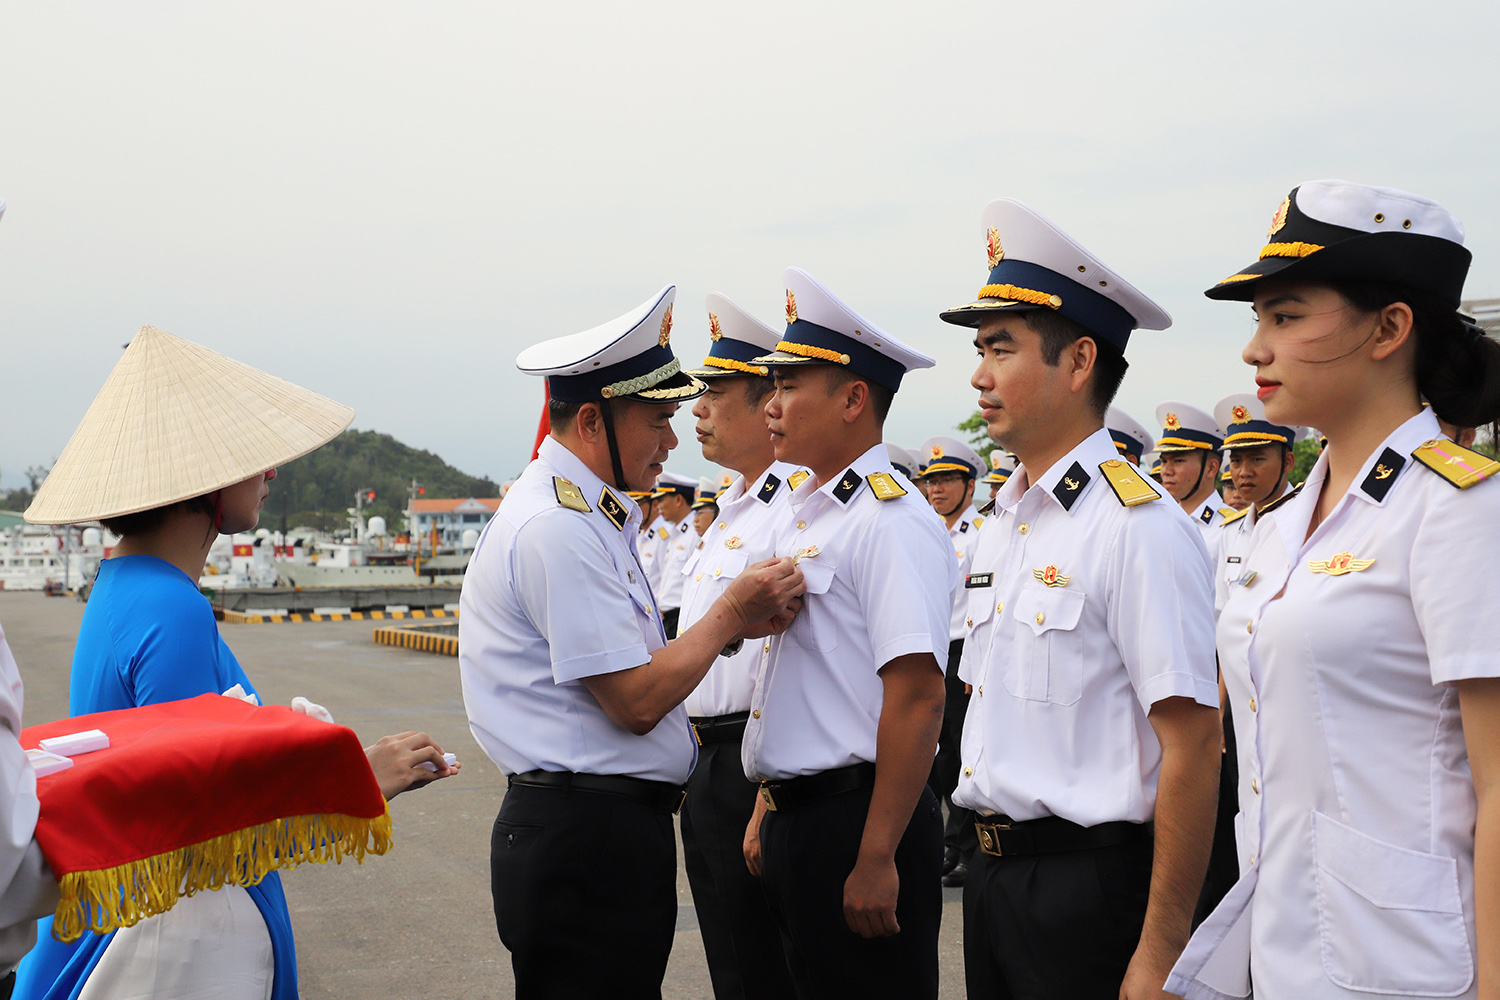 3.	Thủ trưởng Bộ Tư lệnh Vùng 3 trao tặng chỉ huy Tàu 20 Huy hiệu thủy thủ viễn dương